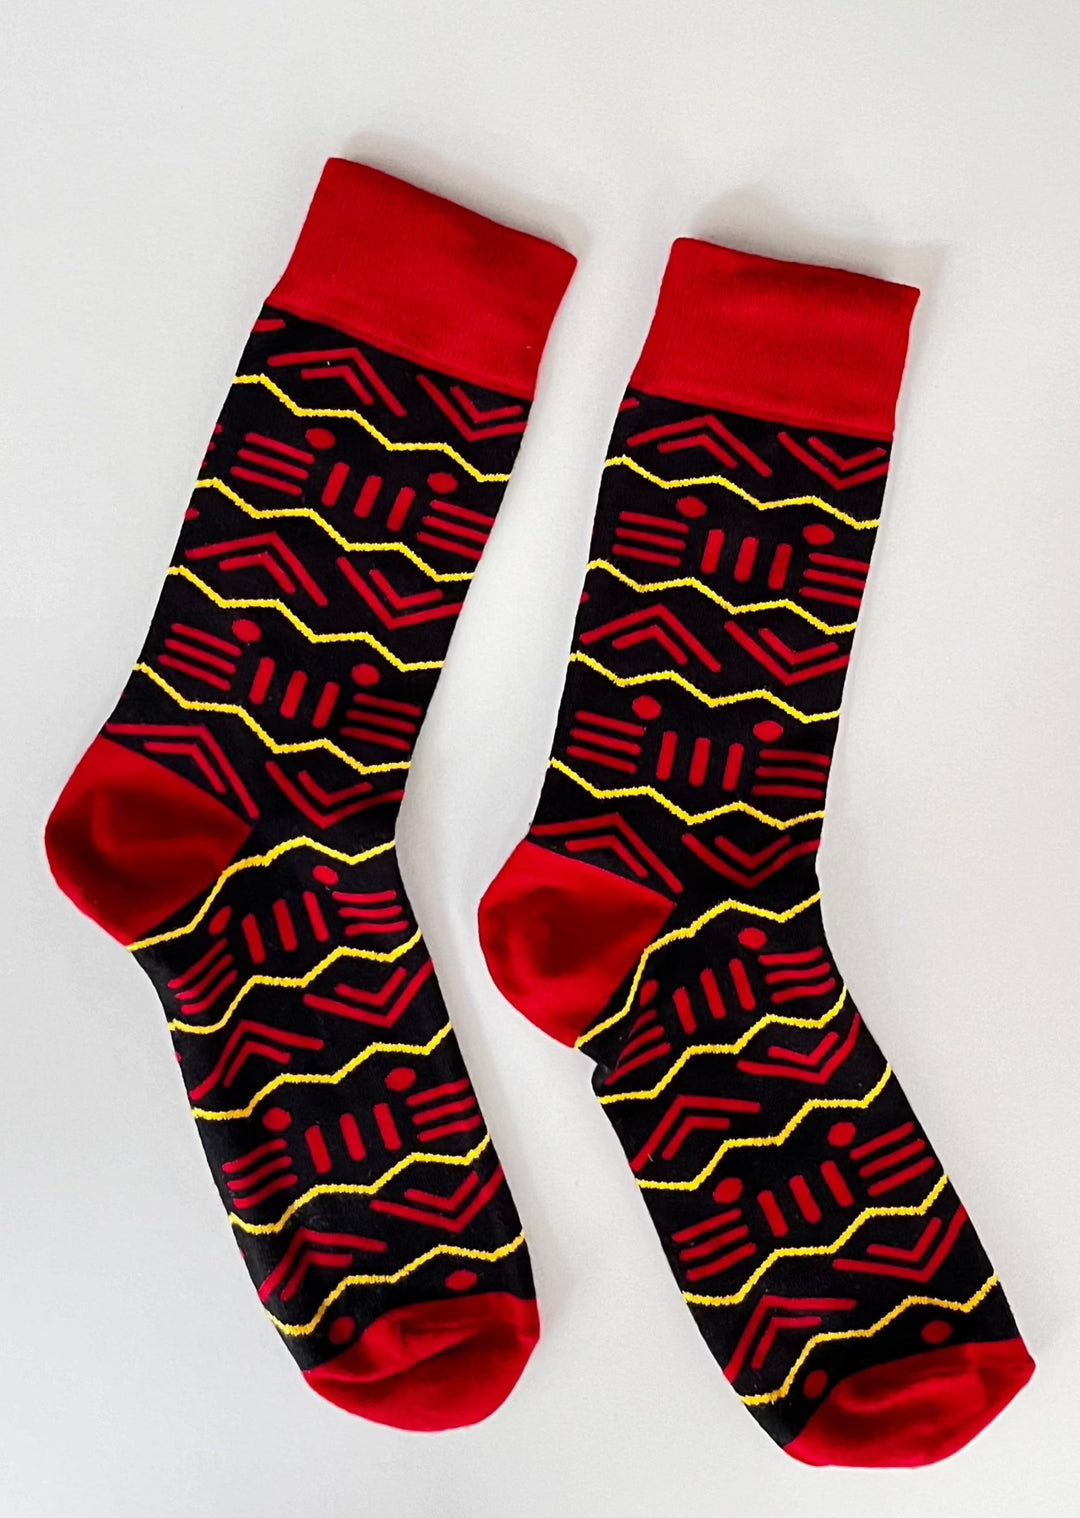 Socks from Kenya